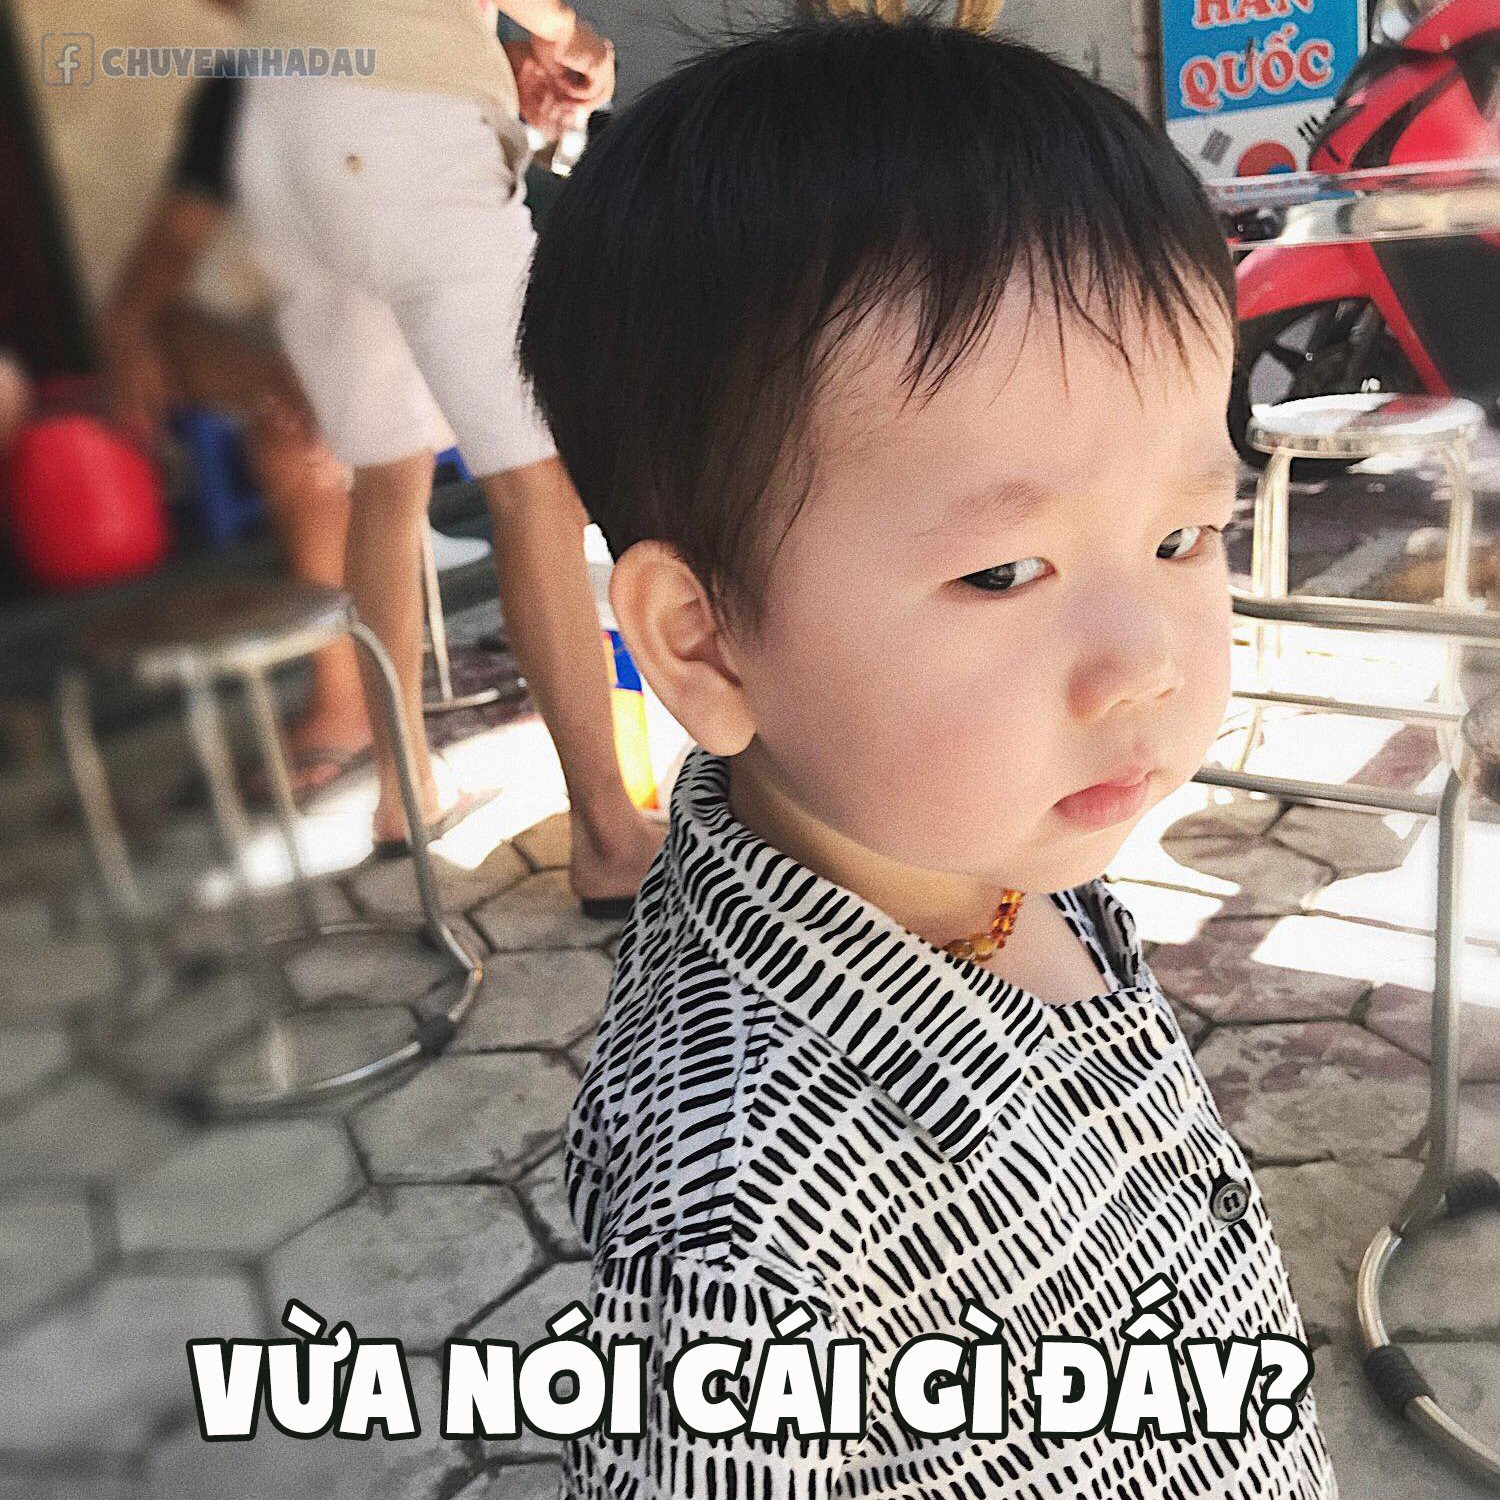 Loạt ảnh chế meme đưa Đậu nhà Thương - Ba Duy lên ngôi em bé có gương mặt giải trí nhất MXH - Ảnh 3.